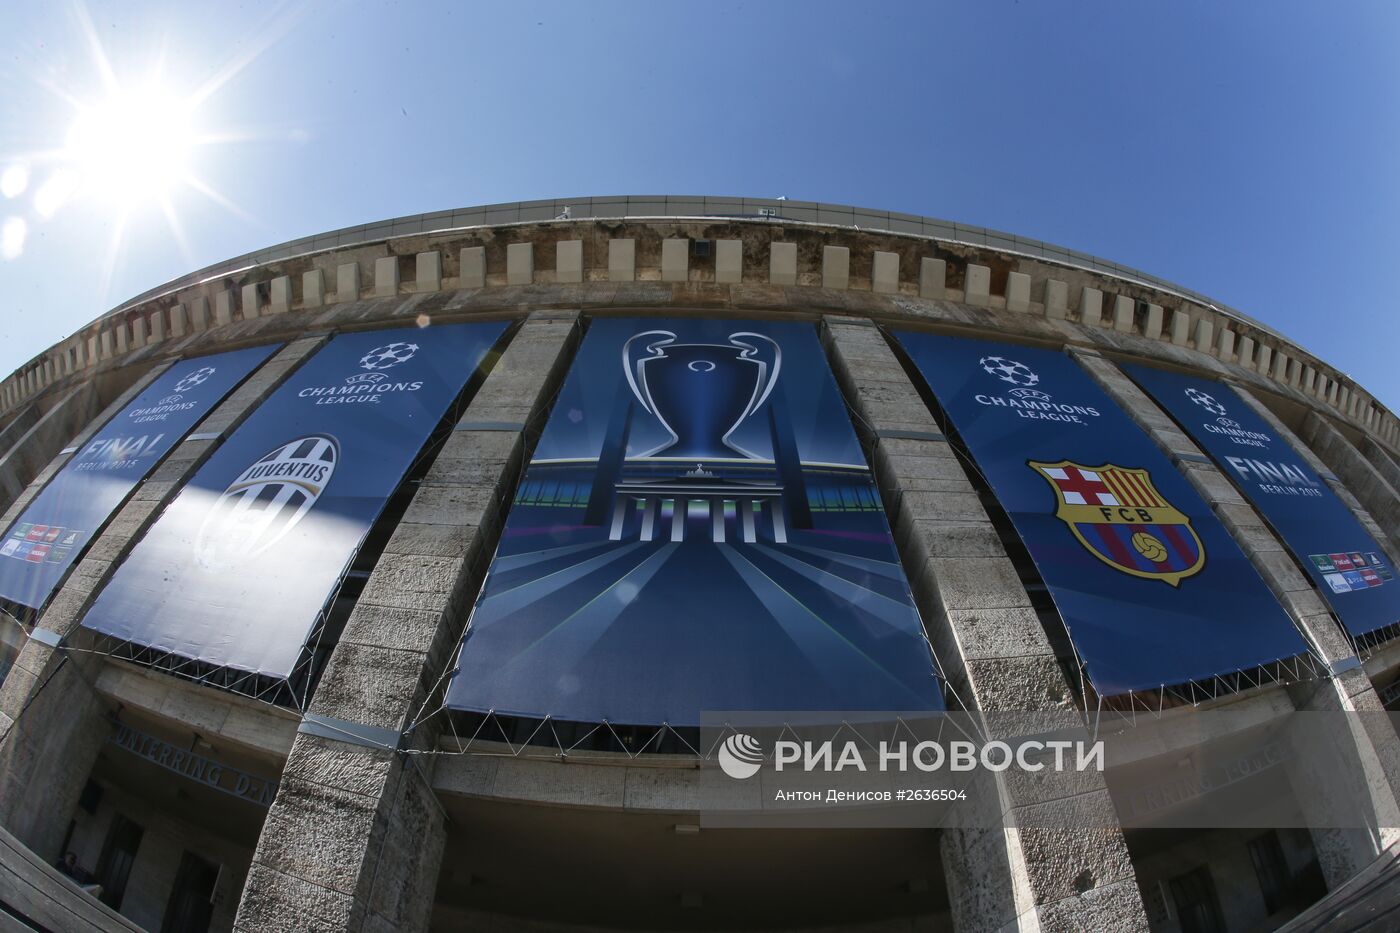 Подготовка к проведению финального матча Лиги чемпионов УЕФА